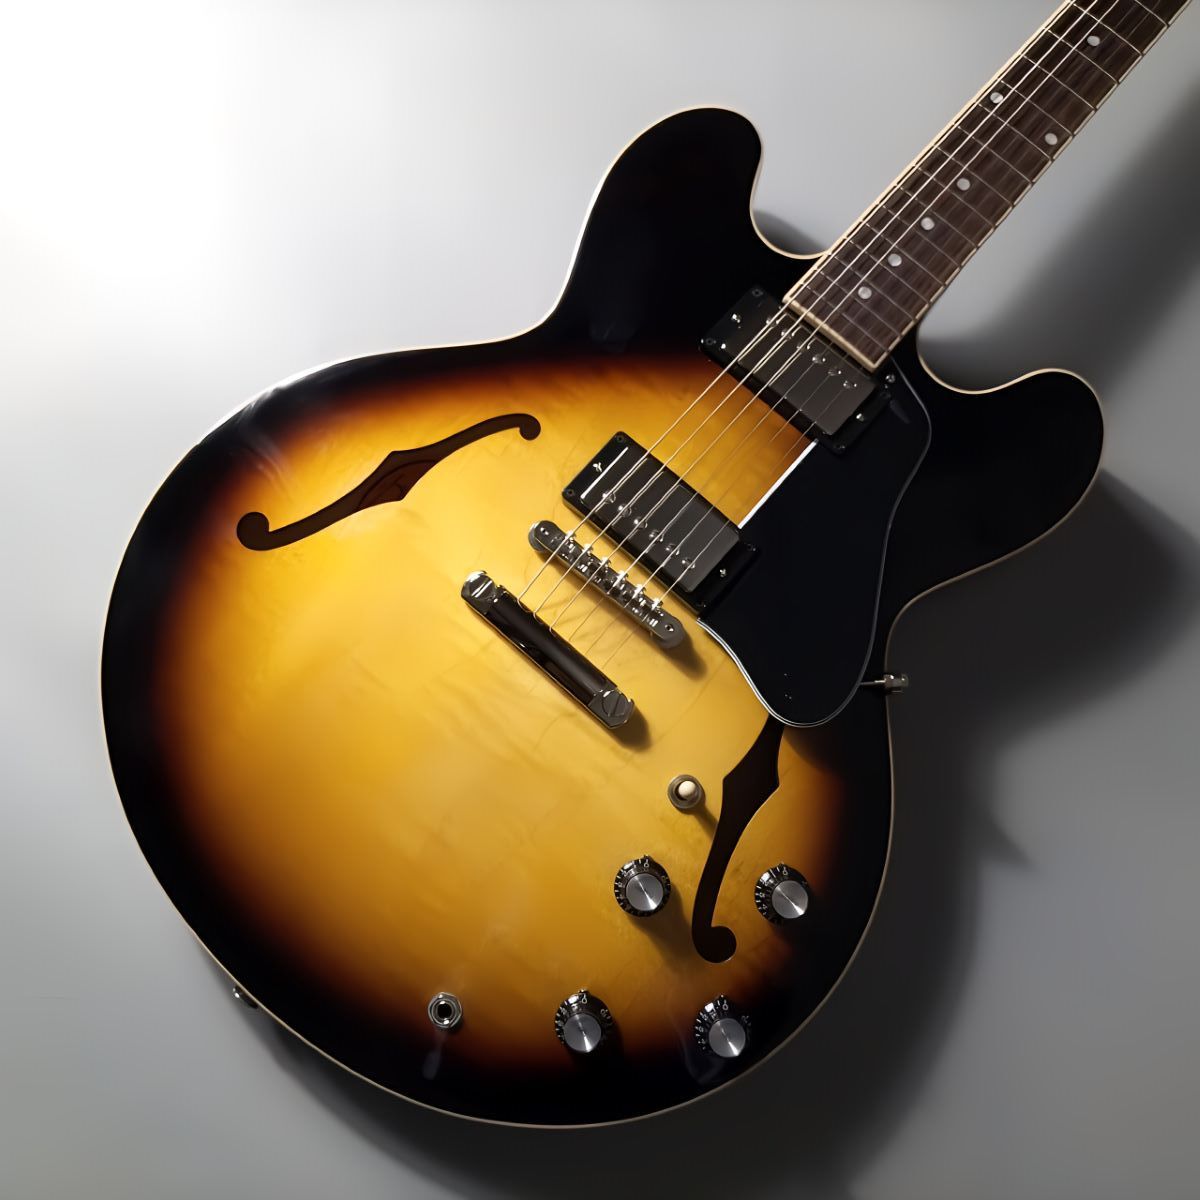 Gibson 【1本限り特価!!】Gibson ES-335 Vitage Burst ギブソン セミアコ